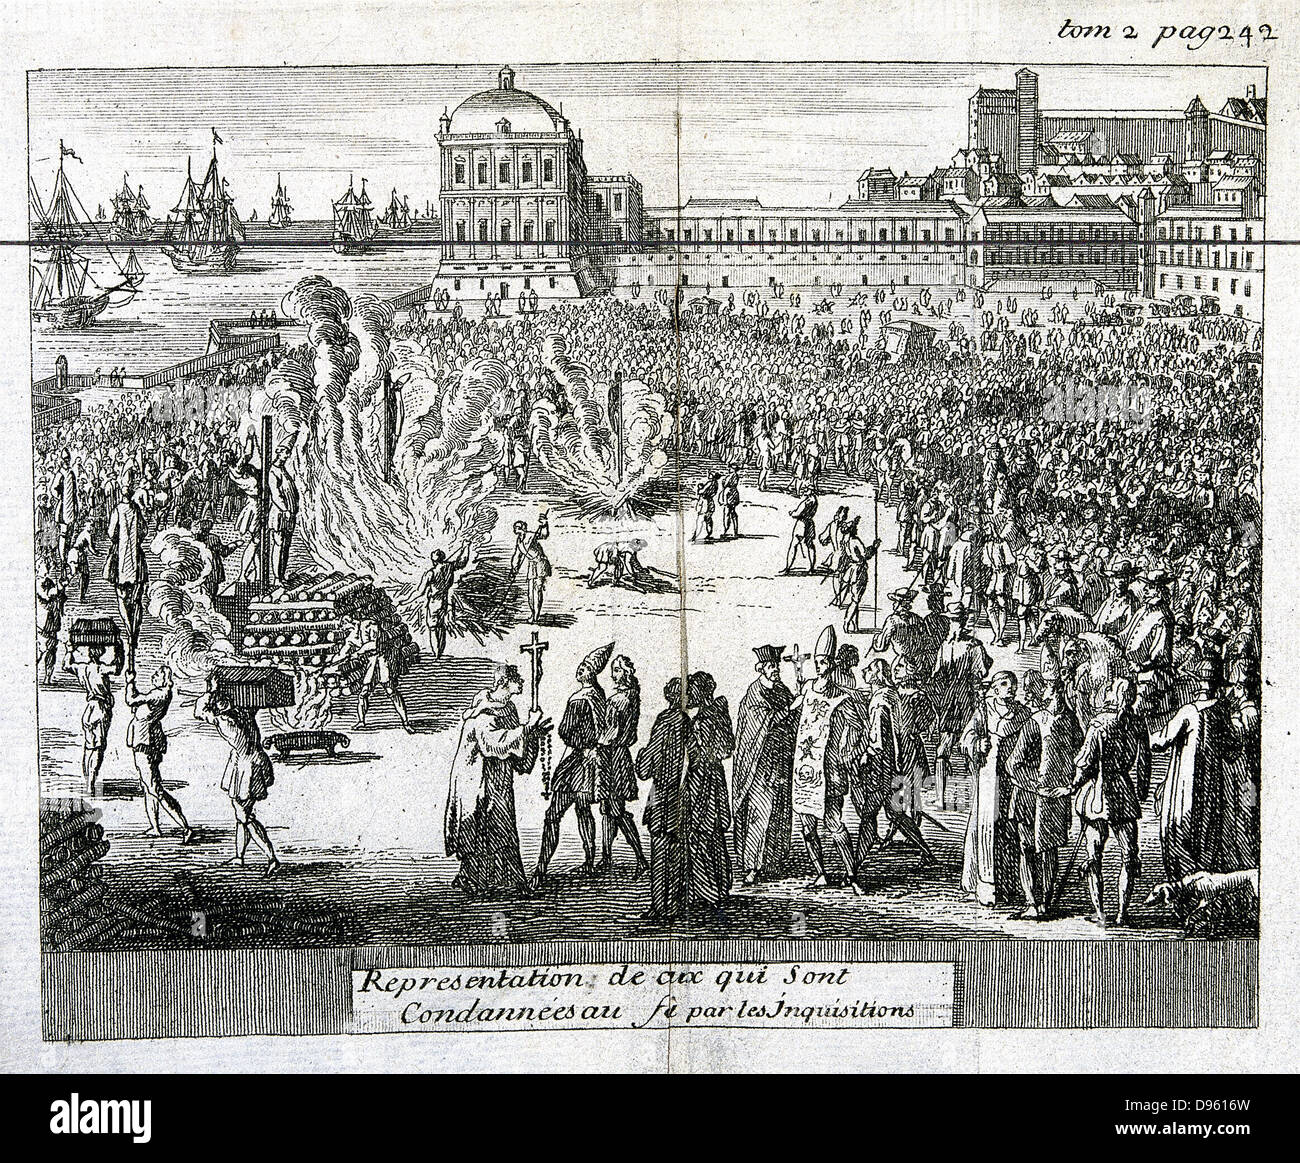 Verbrennen der Ketzer verurteilt von der Inquisition. Kupferstich veröffentlicht Köln, 1759. Privatsammlung Stockfoto